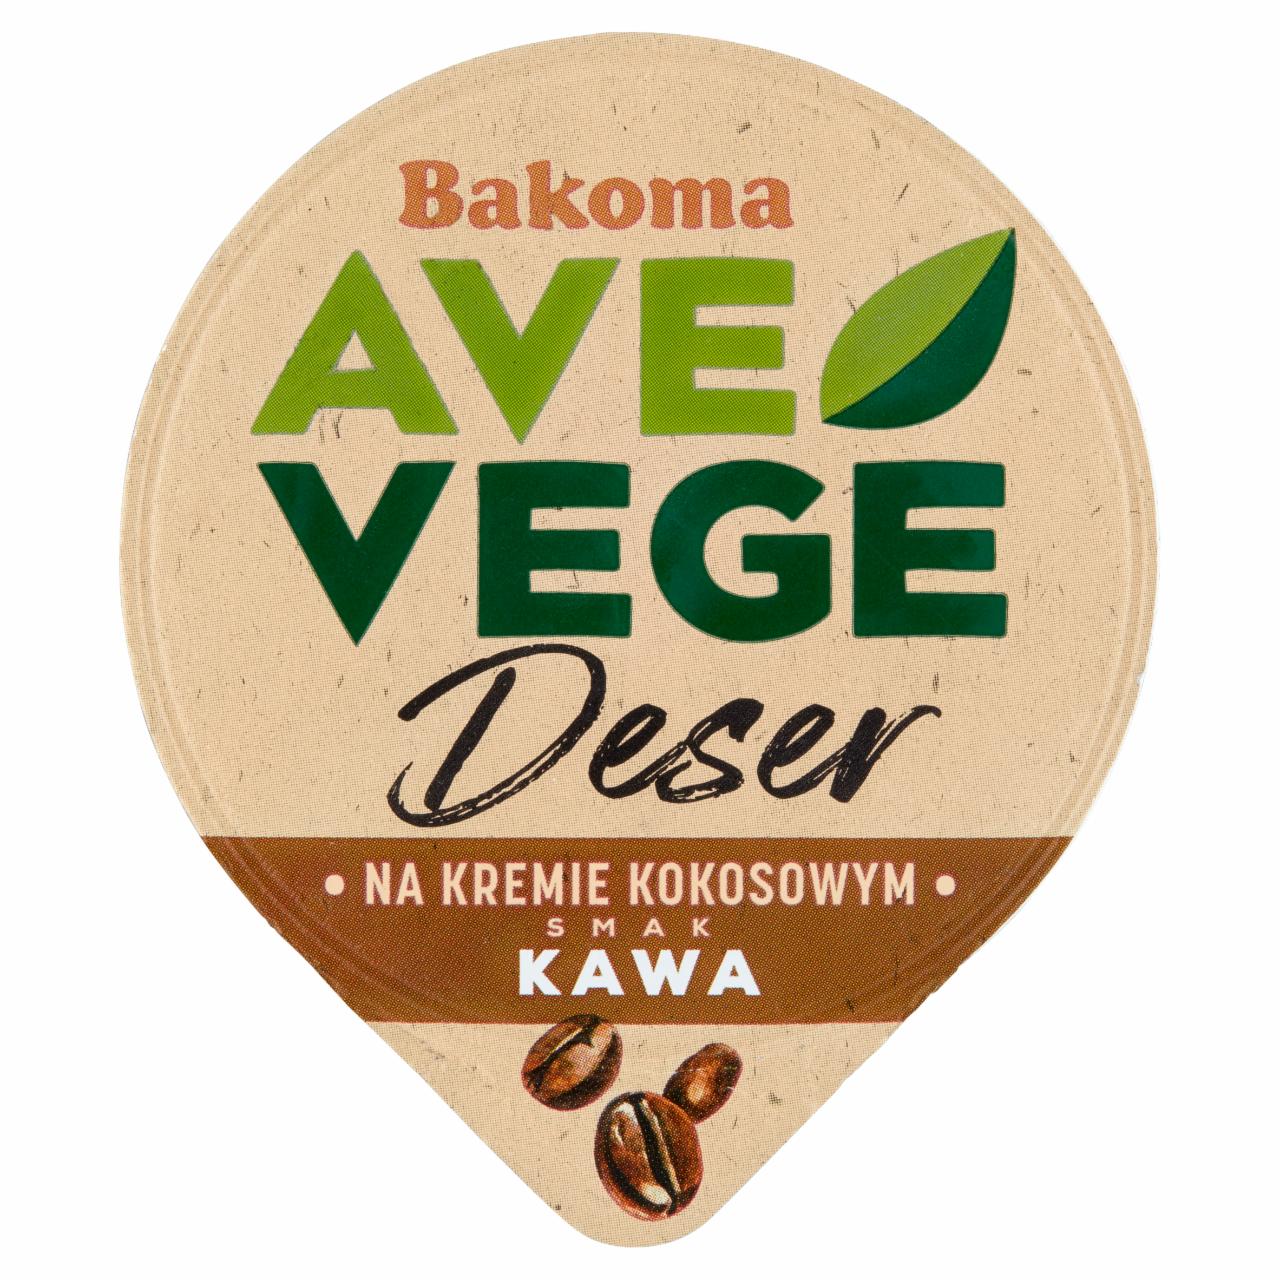 Zdjęcia - Bakoma Ave Vege Deser na kremie kokosowym smak kawa 150 g 